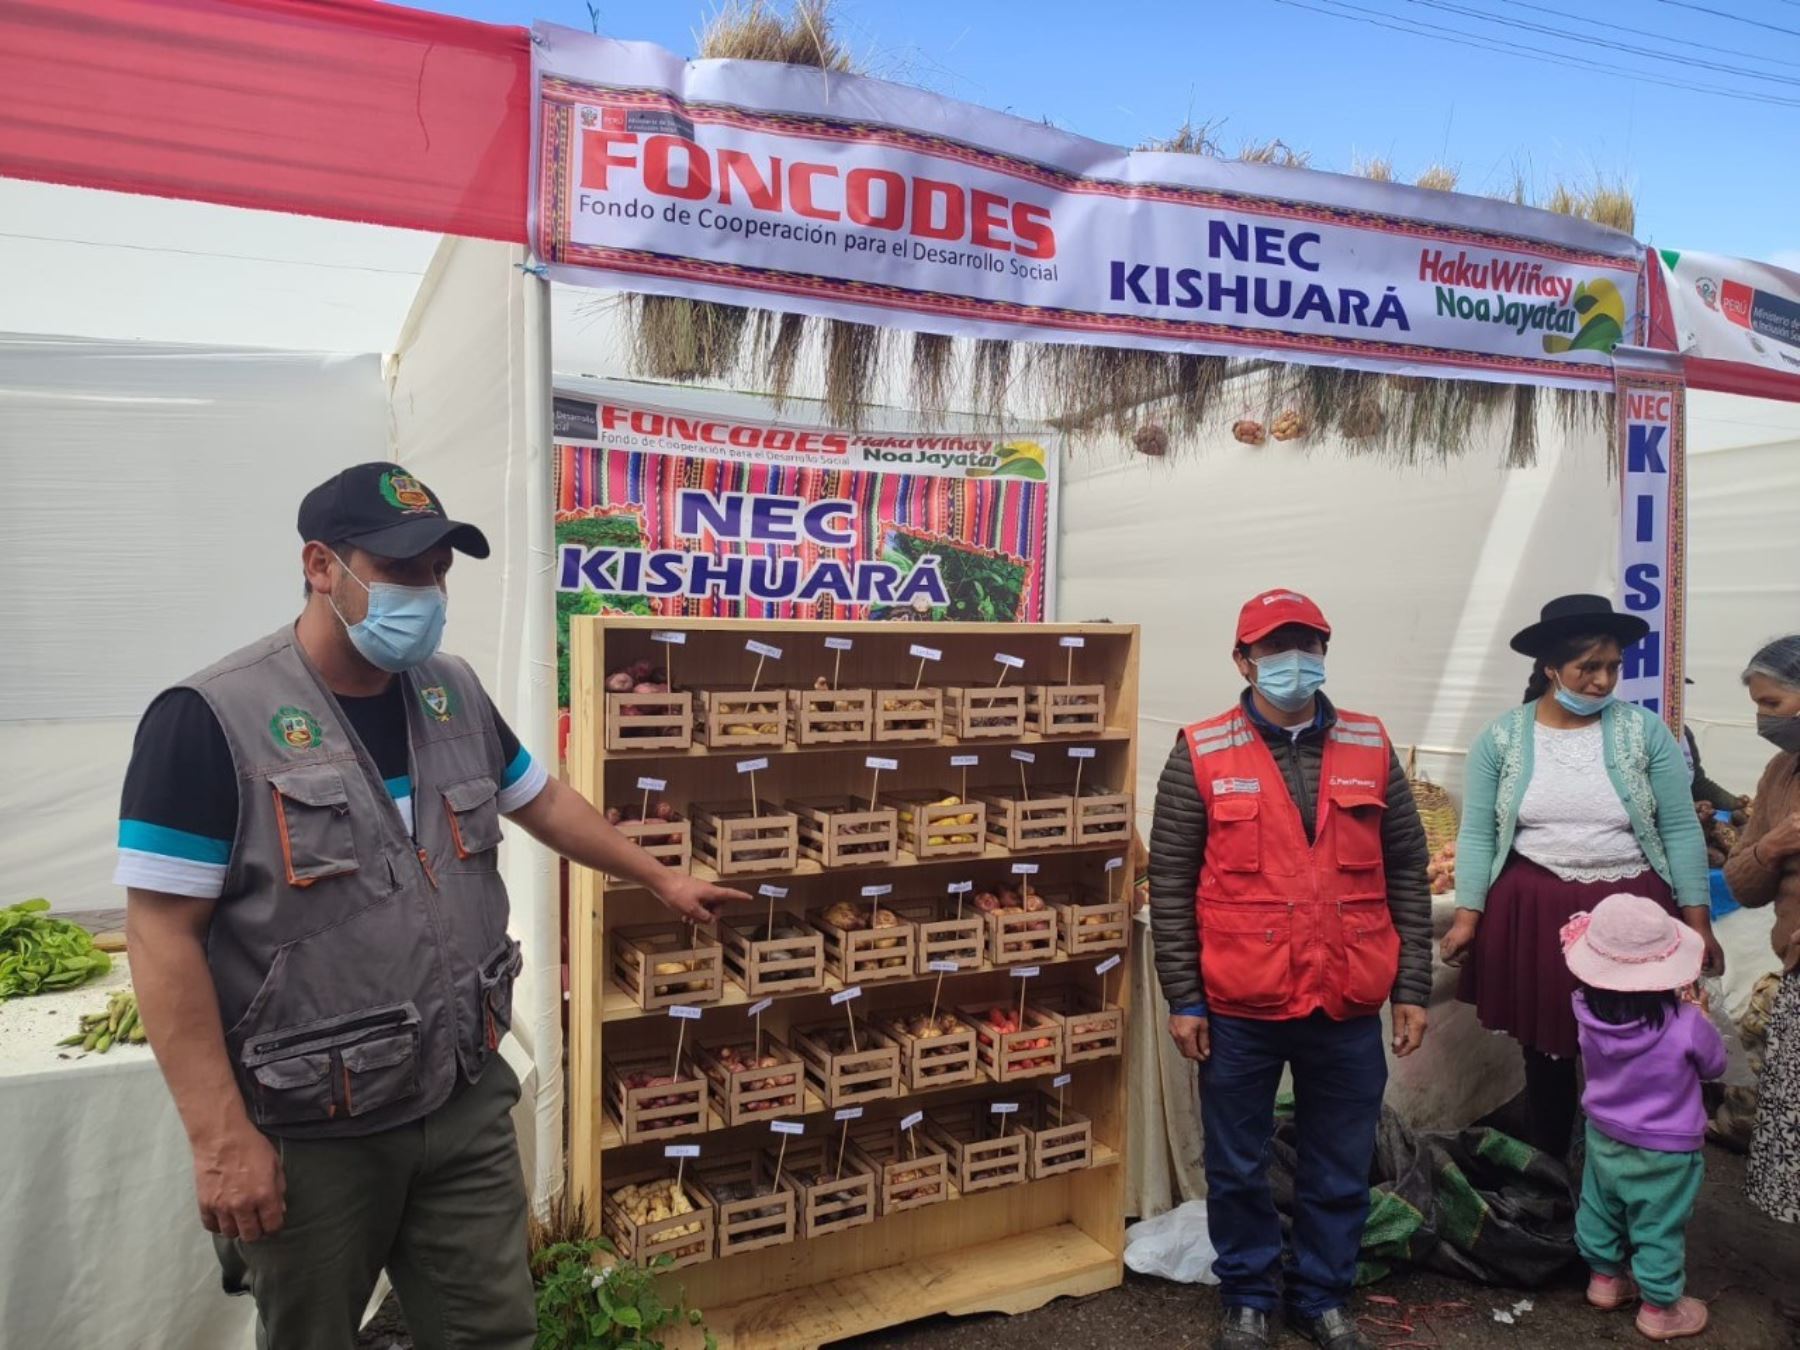 Apurímac:60 emprendimientos de Haku Wiñay acceden a mercados locales con buenos resultados